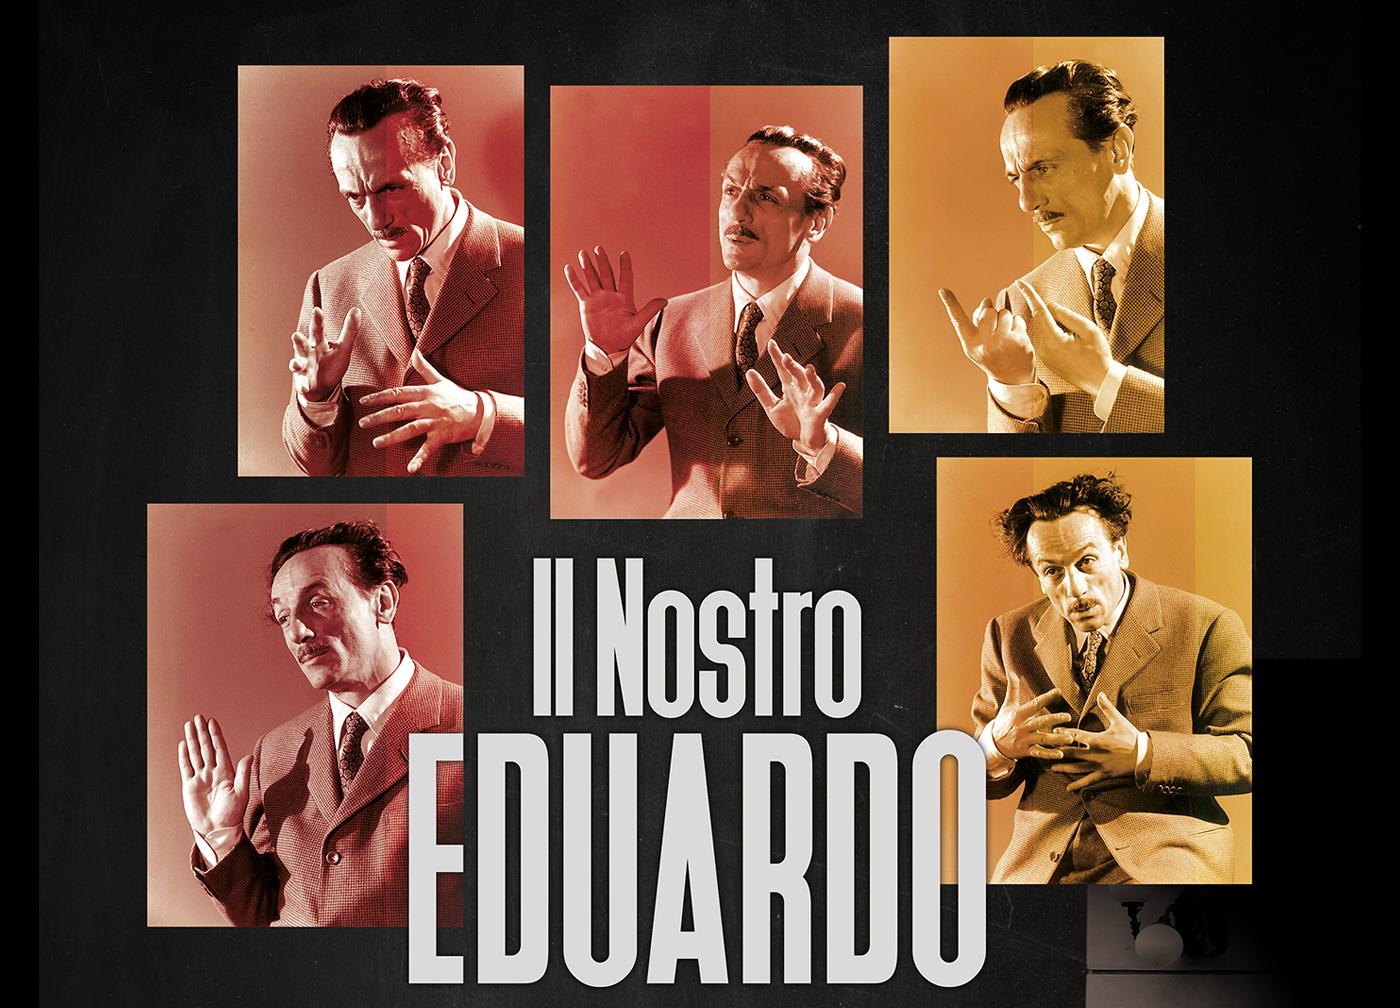 locandina di "Il Nostro Eduardo"